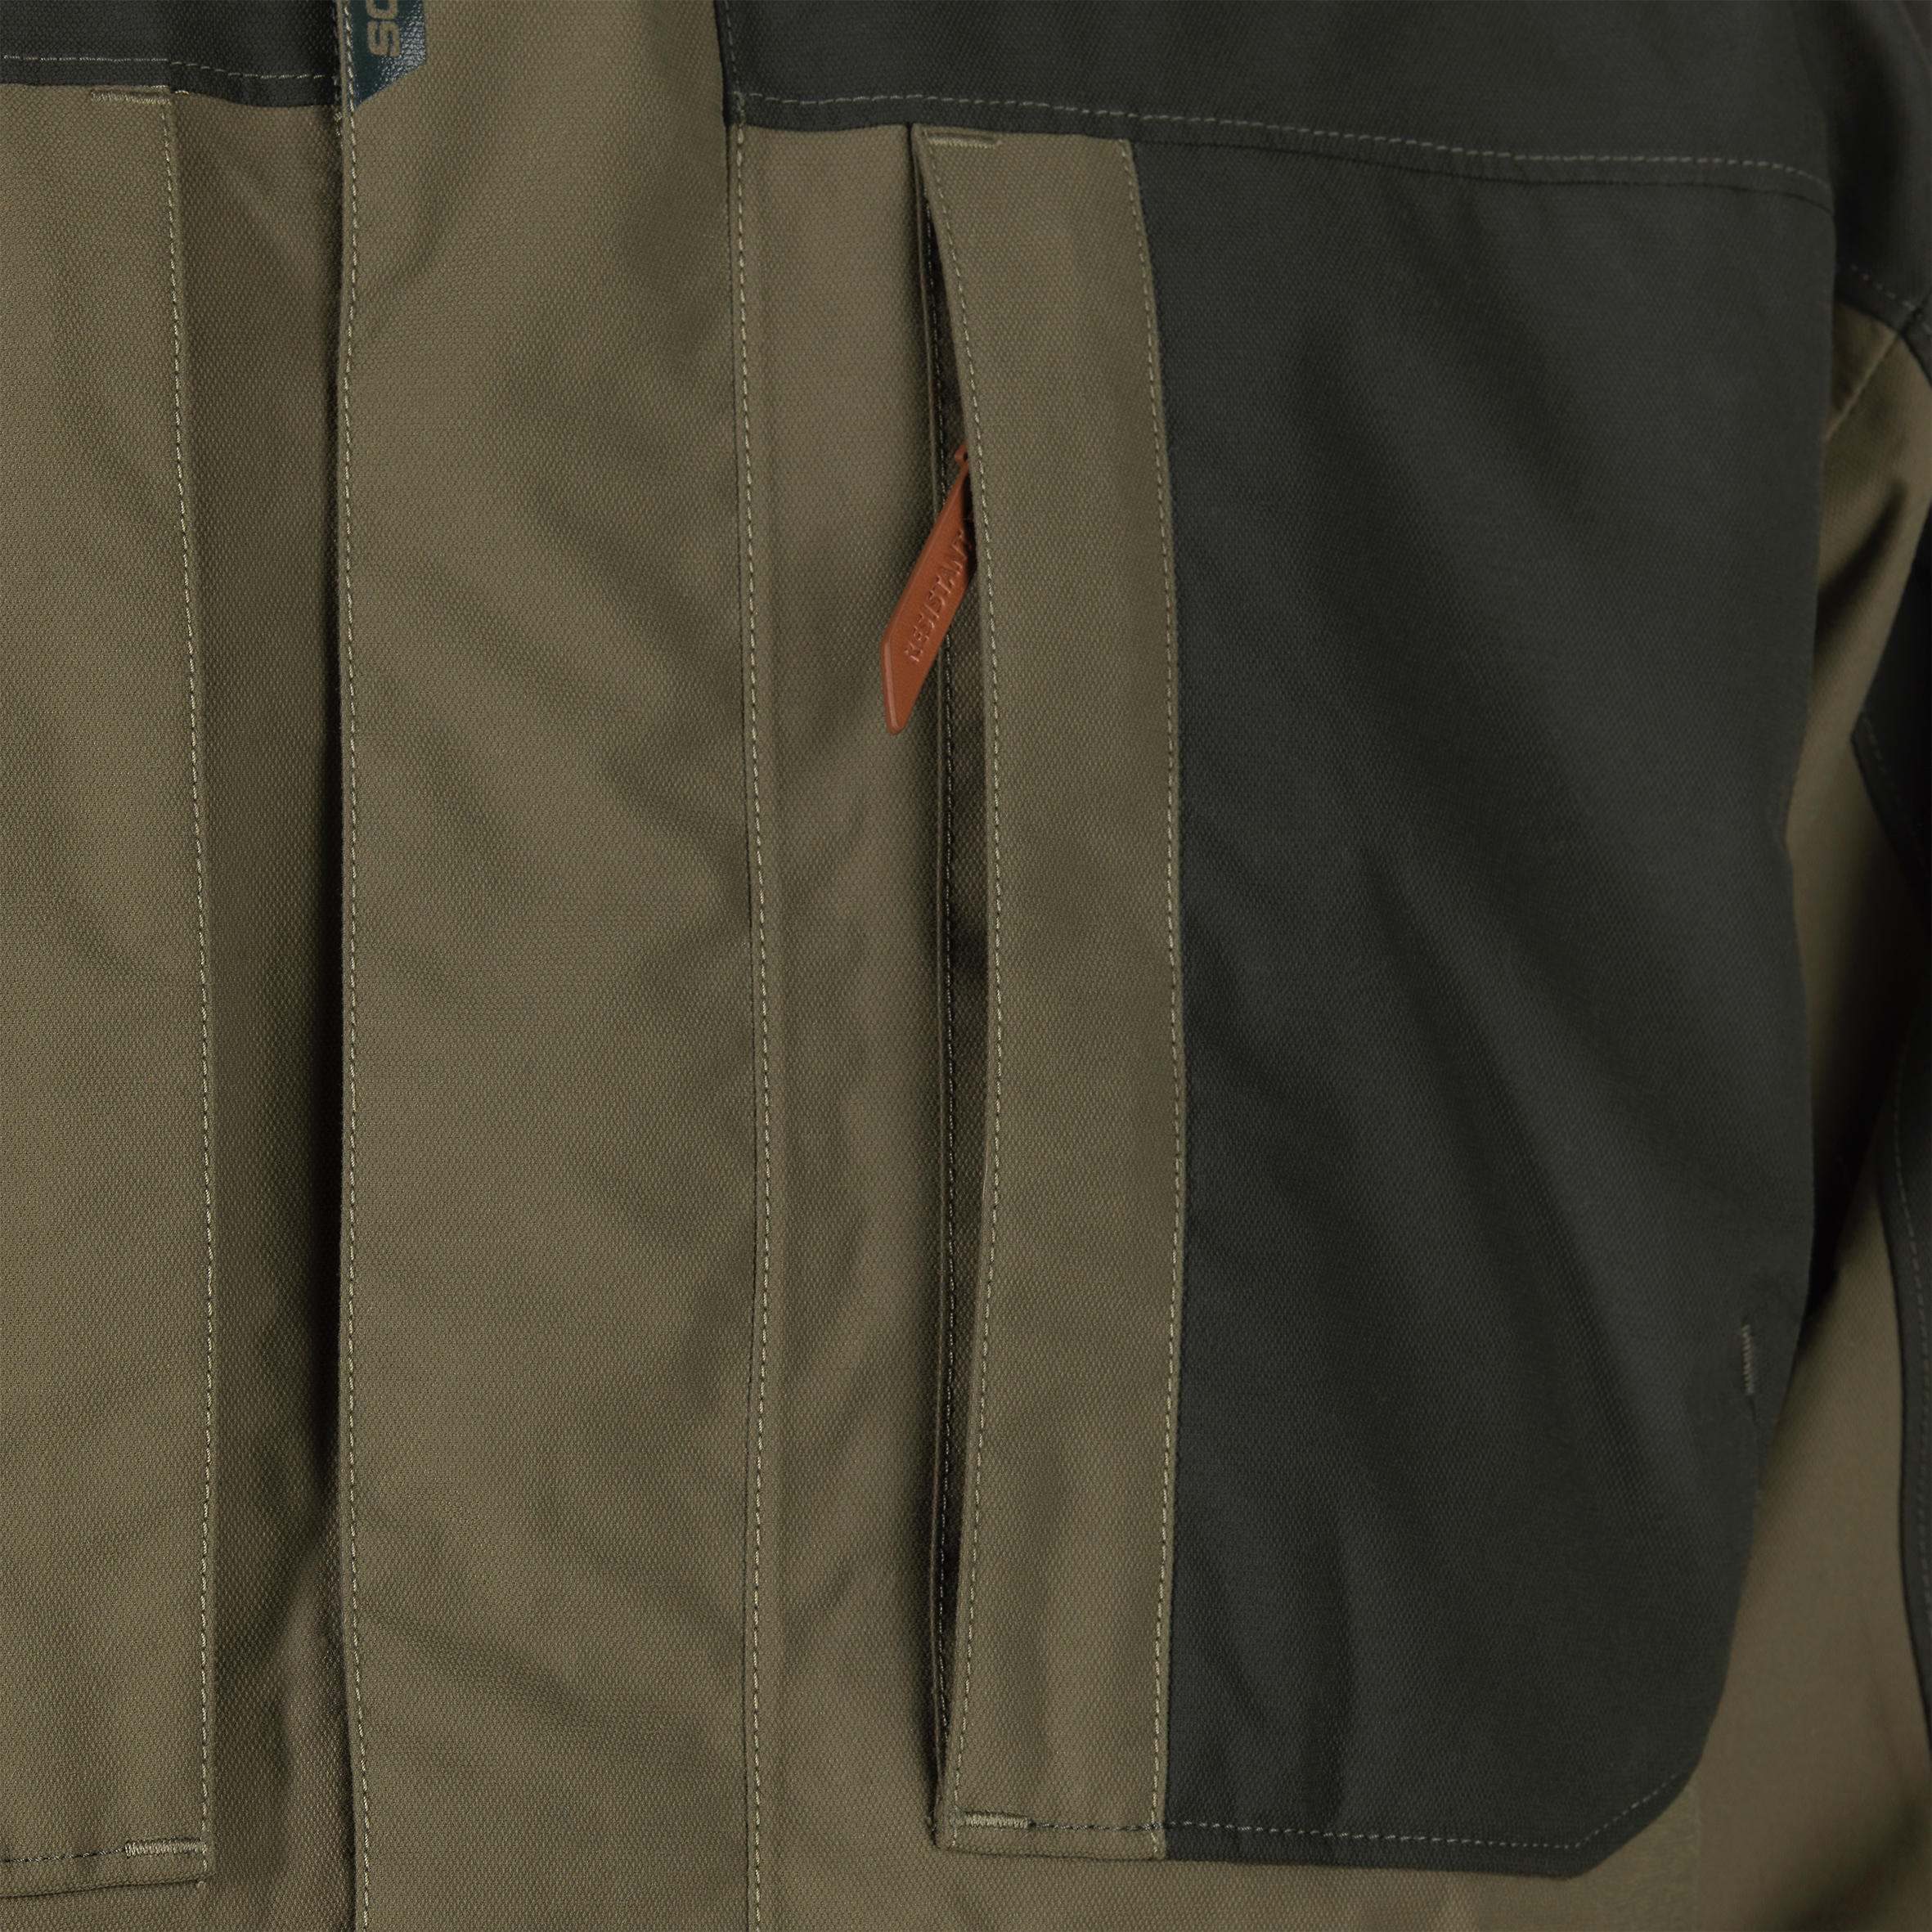 Reinforced Waterproof Jacket - Brown 9/21